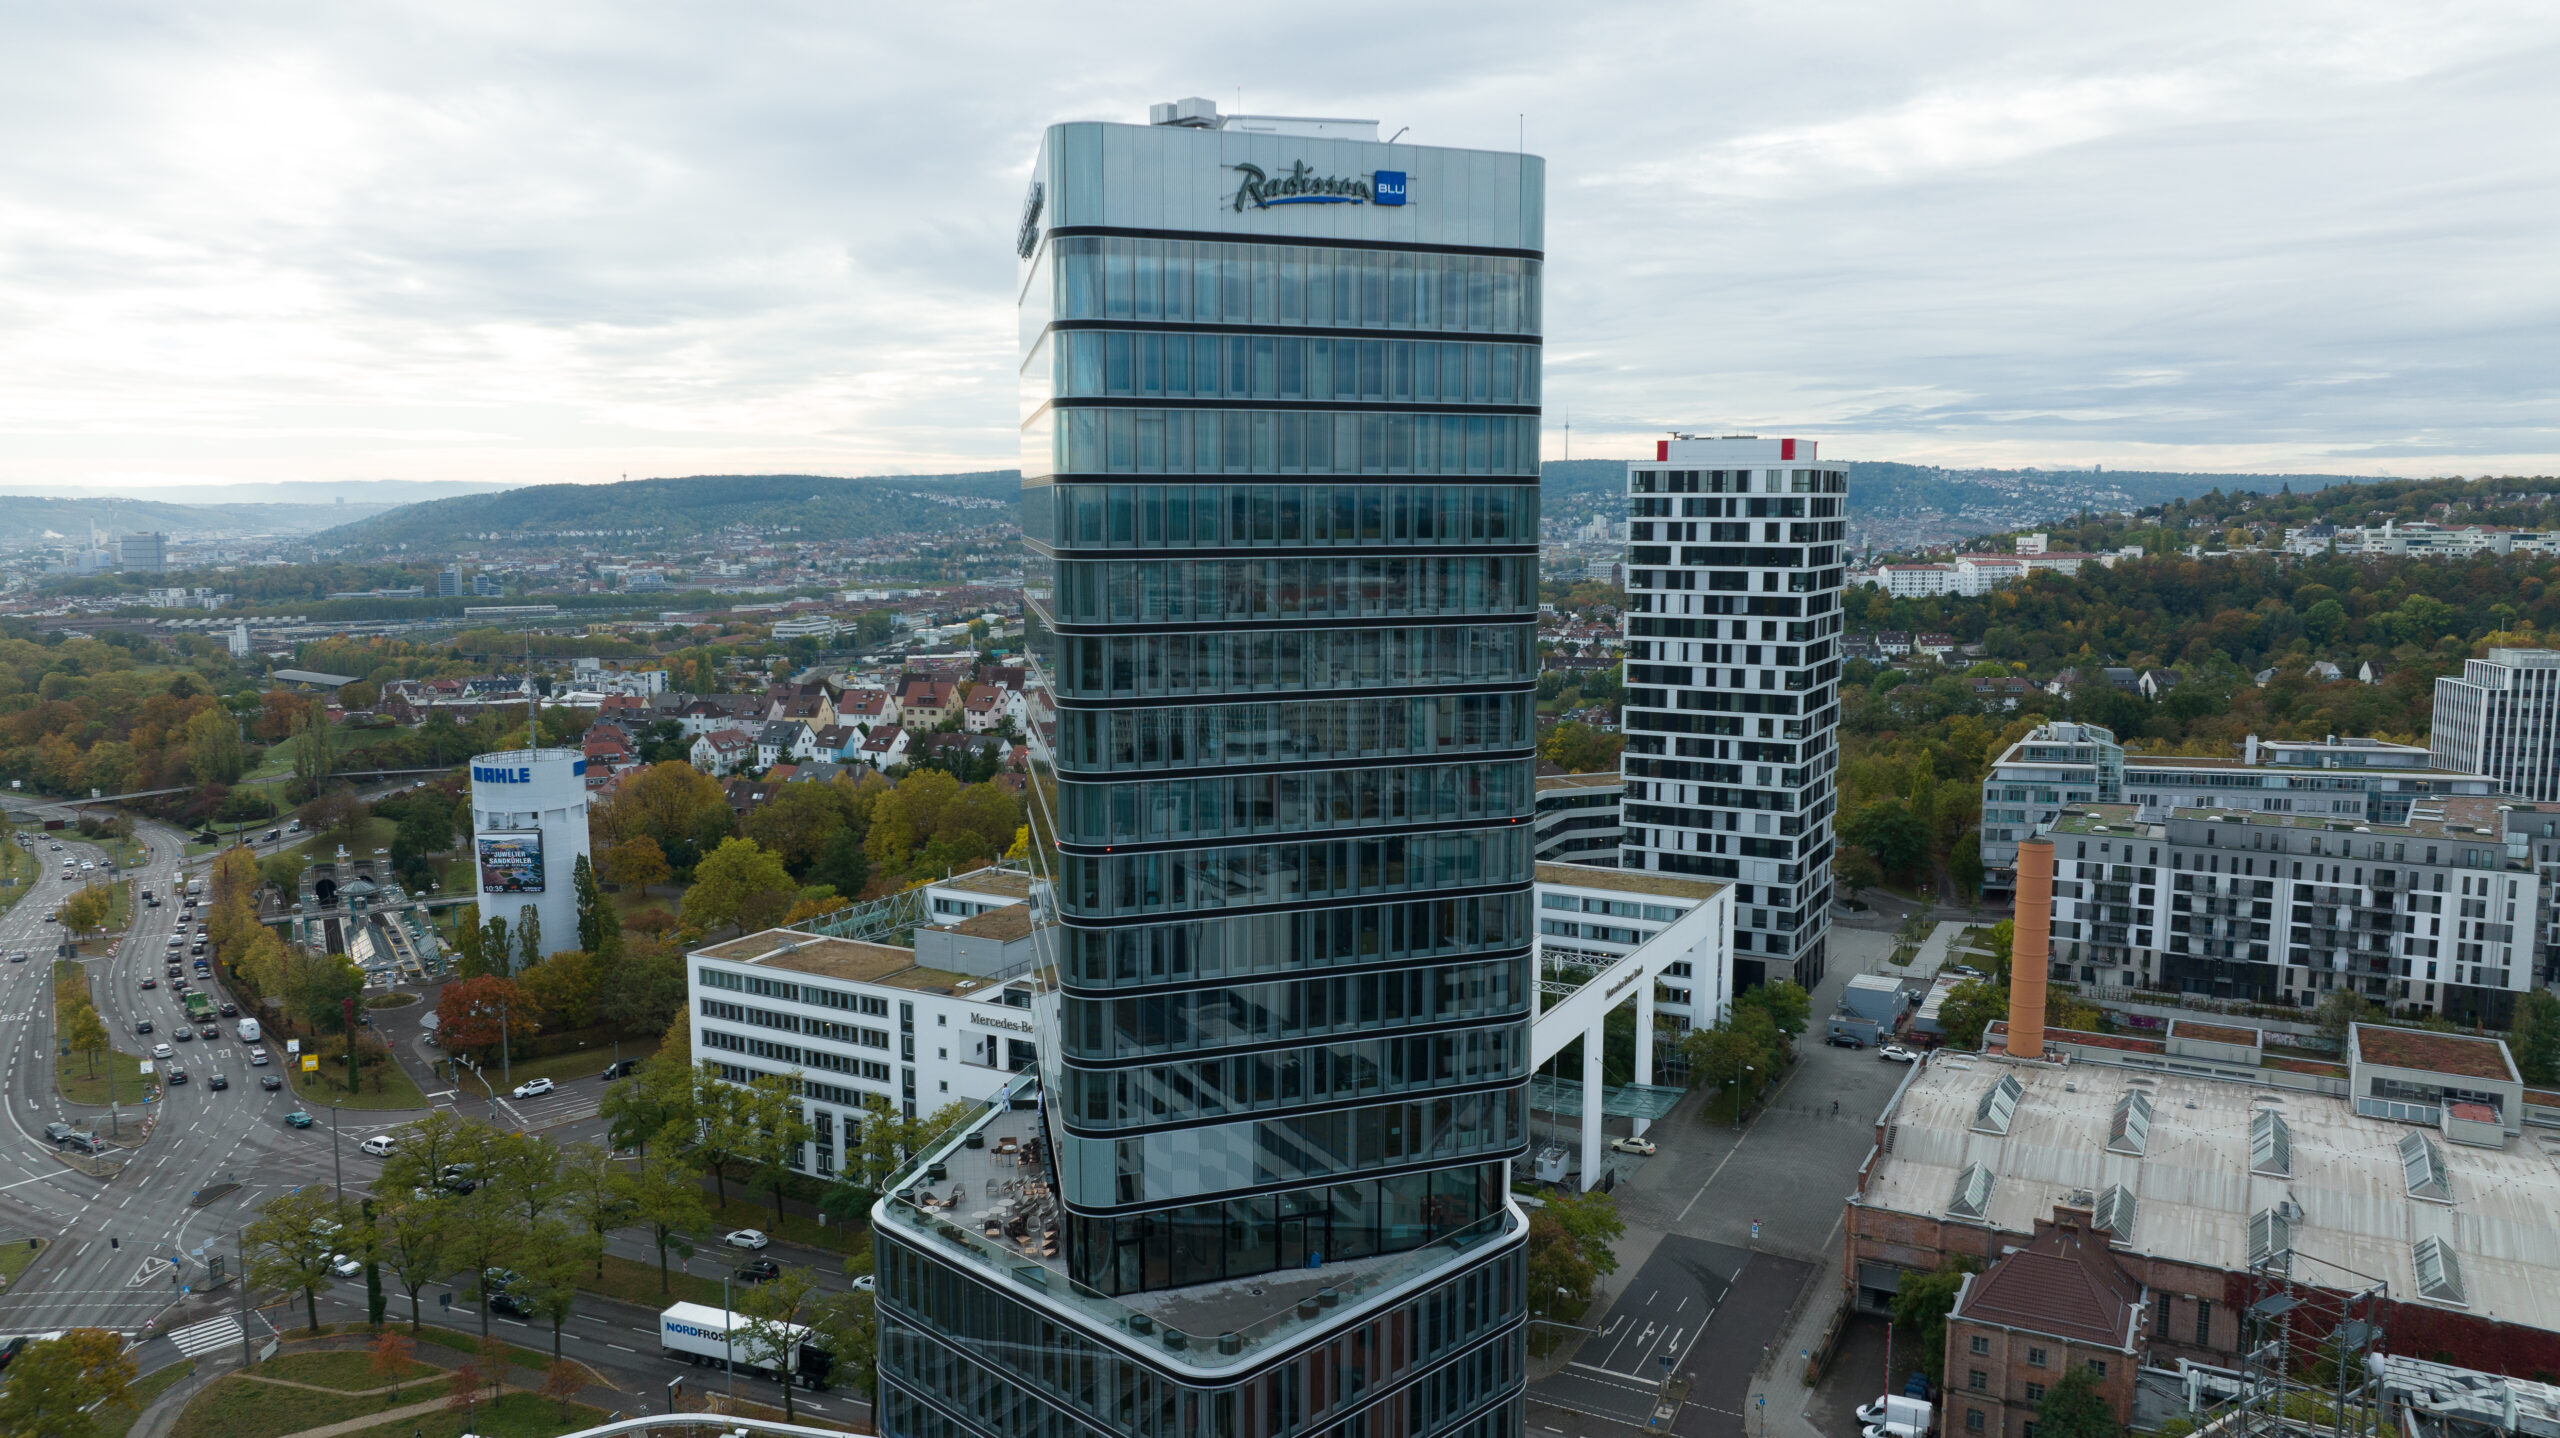 Radisson Blu Hotel Porsche Design Tower Stuttgart Opens